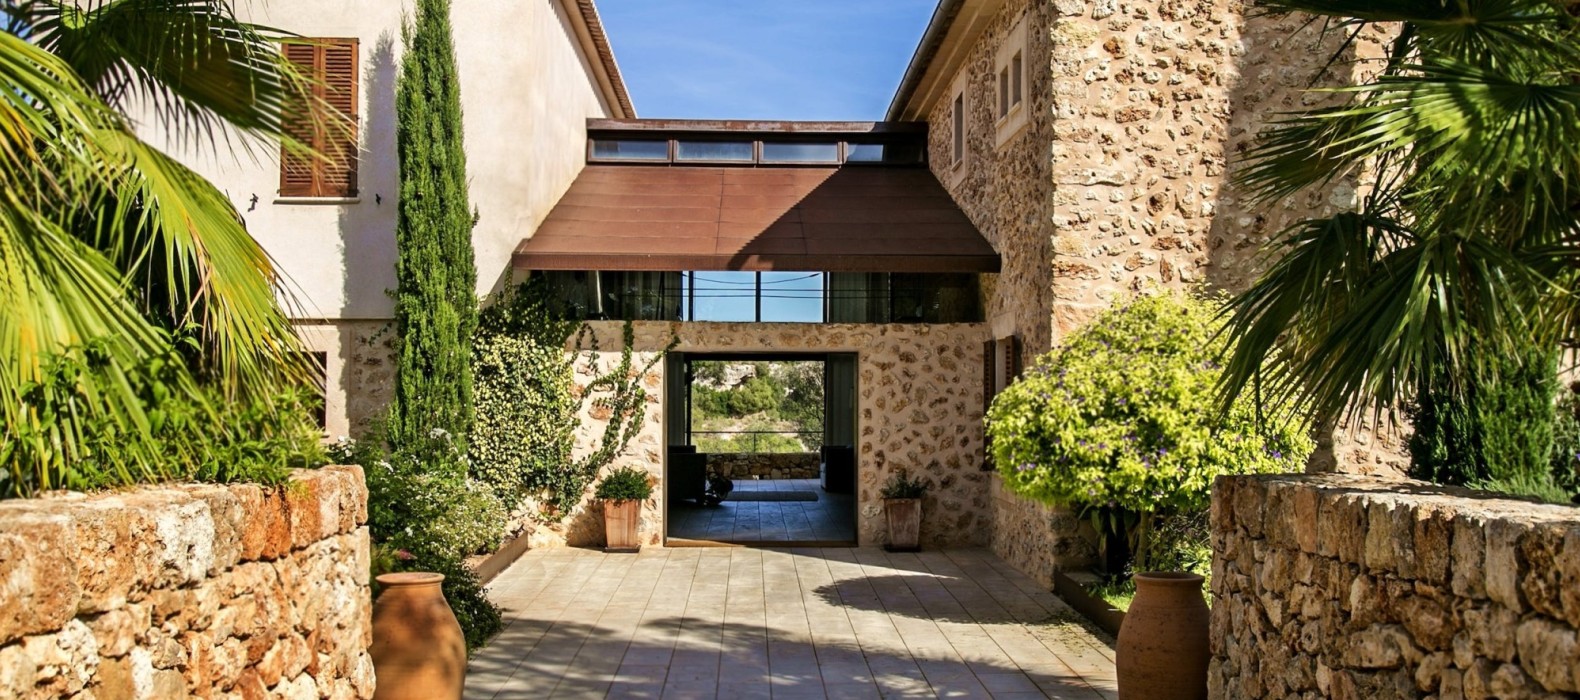 Exterior entrance of Villa Can Crystal in Mallorca